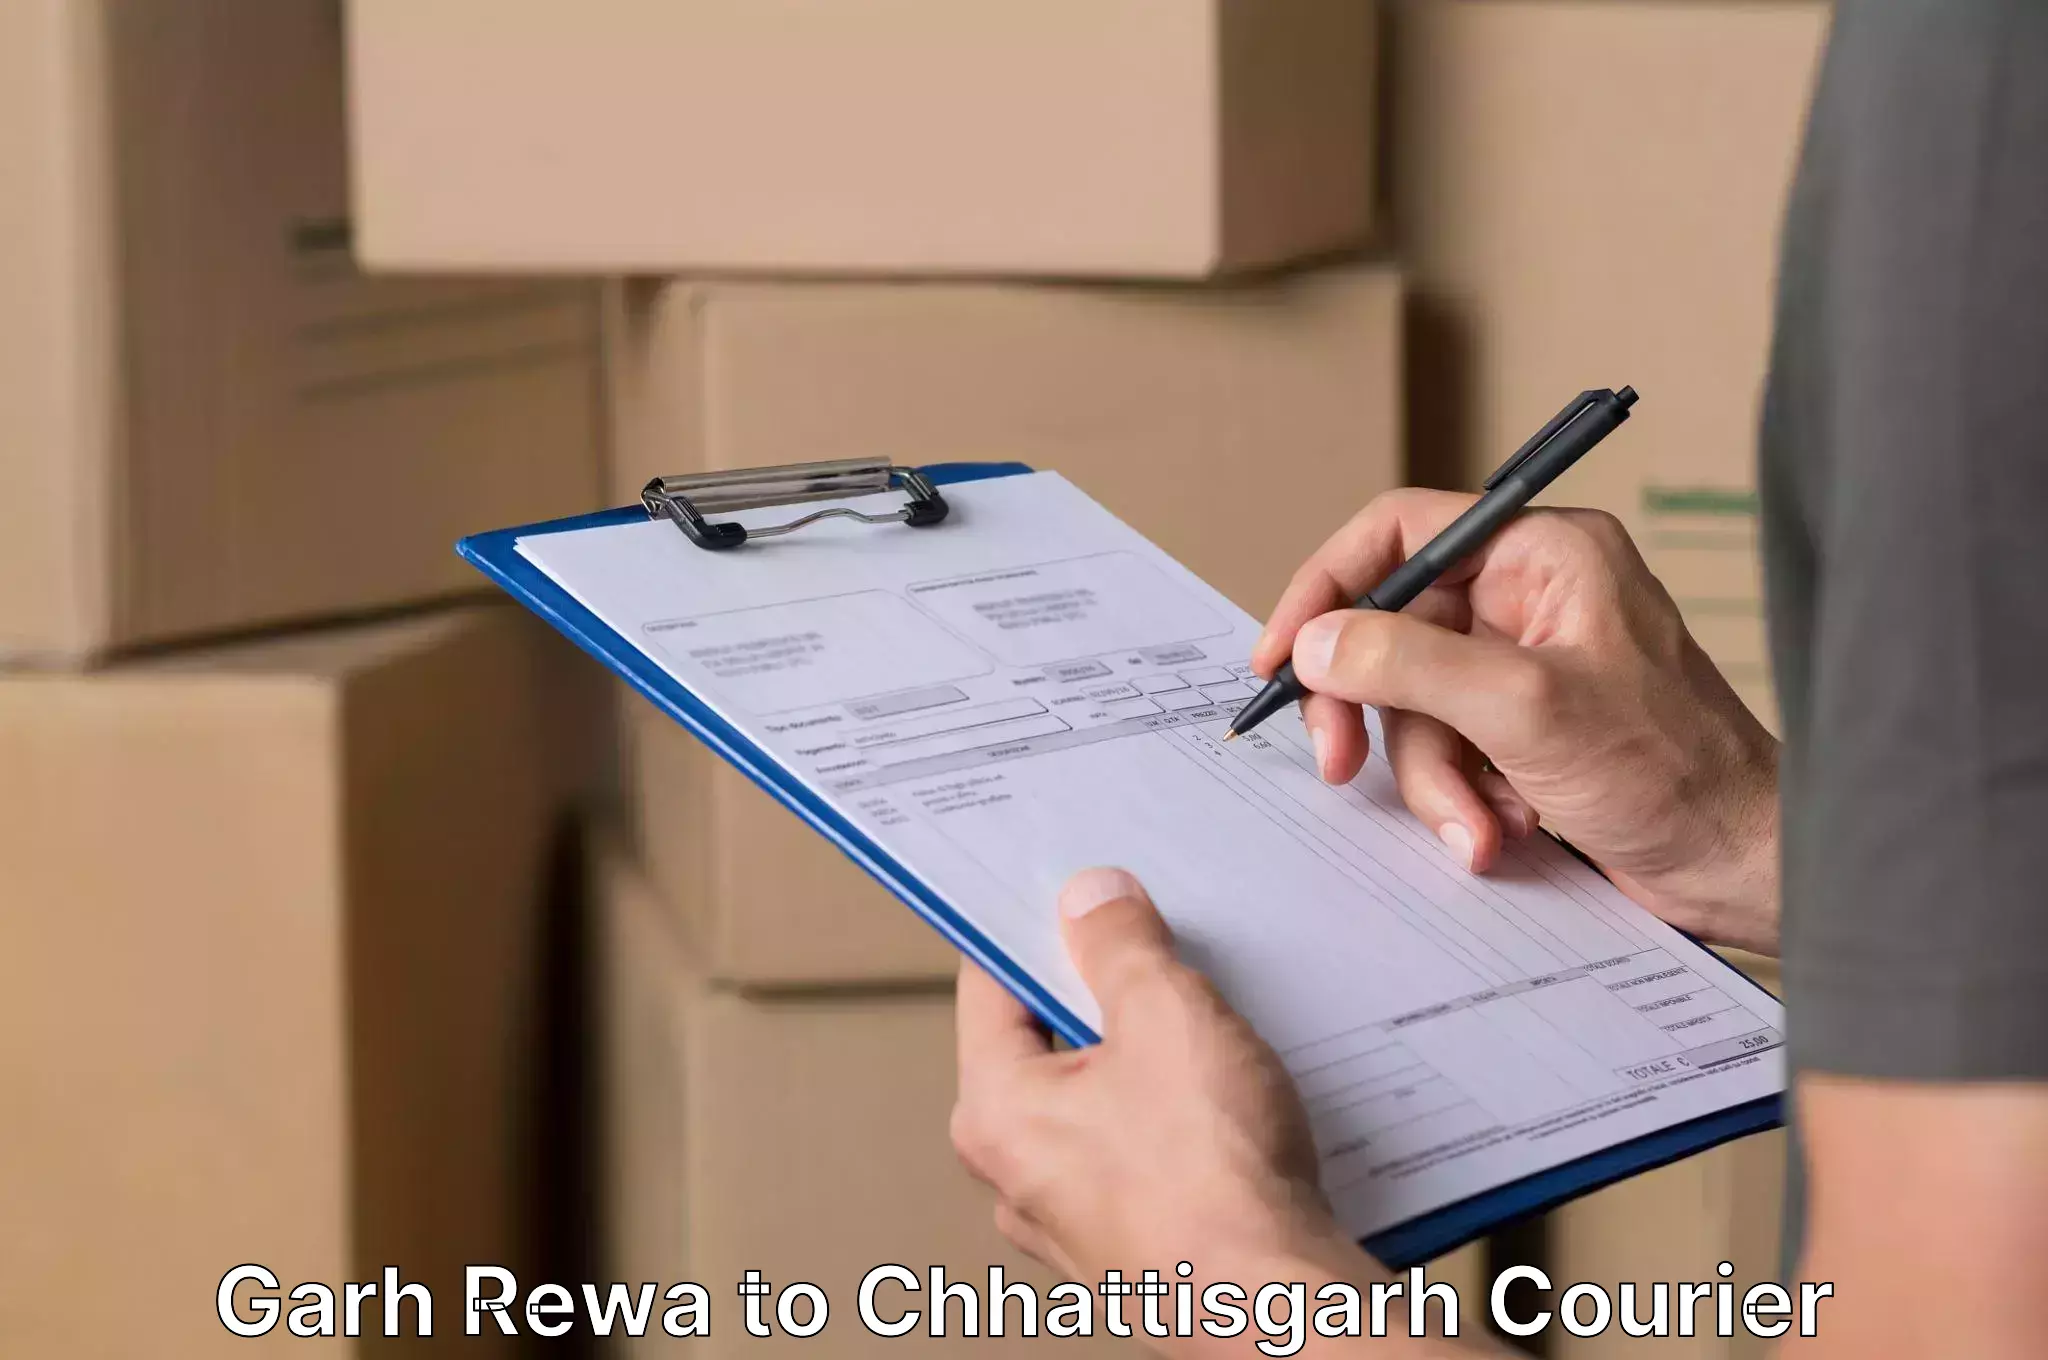 Full home relocation services Garh Rewa to Raigarh Chhattisgarh